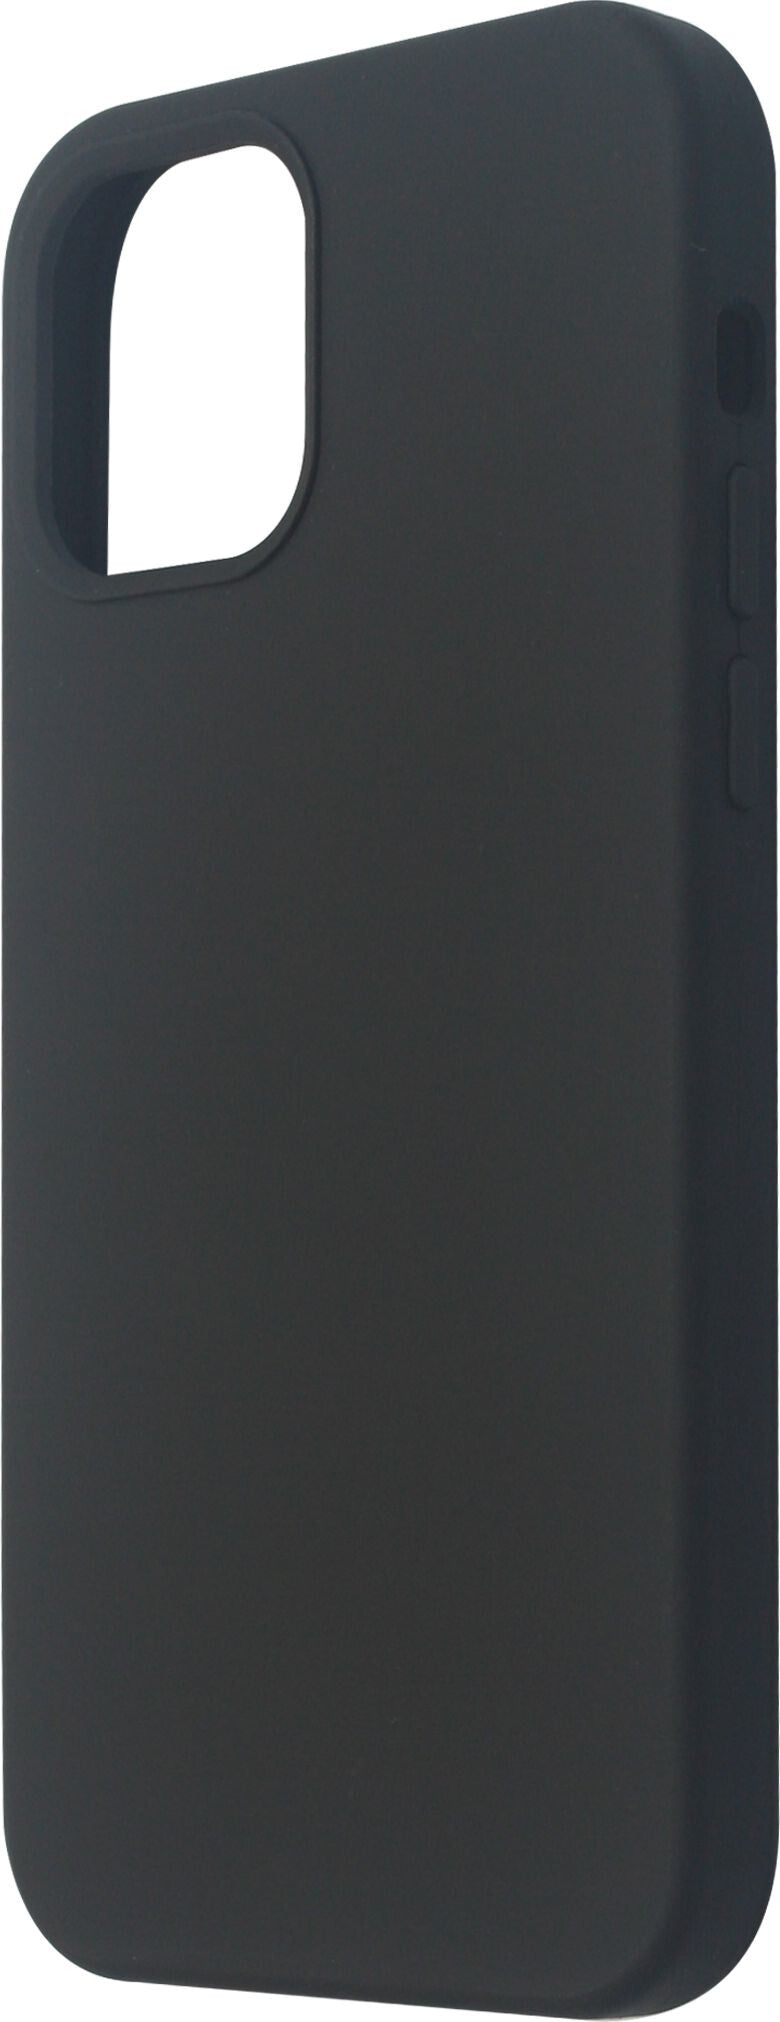 eSTUFF INFINITE RIGA mobile phone case for iPhone 12 / 12 Pro in Black